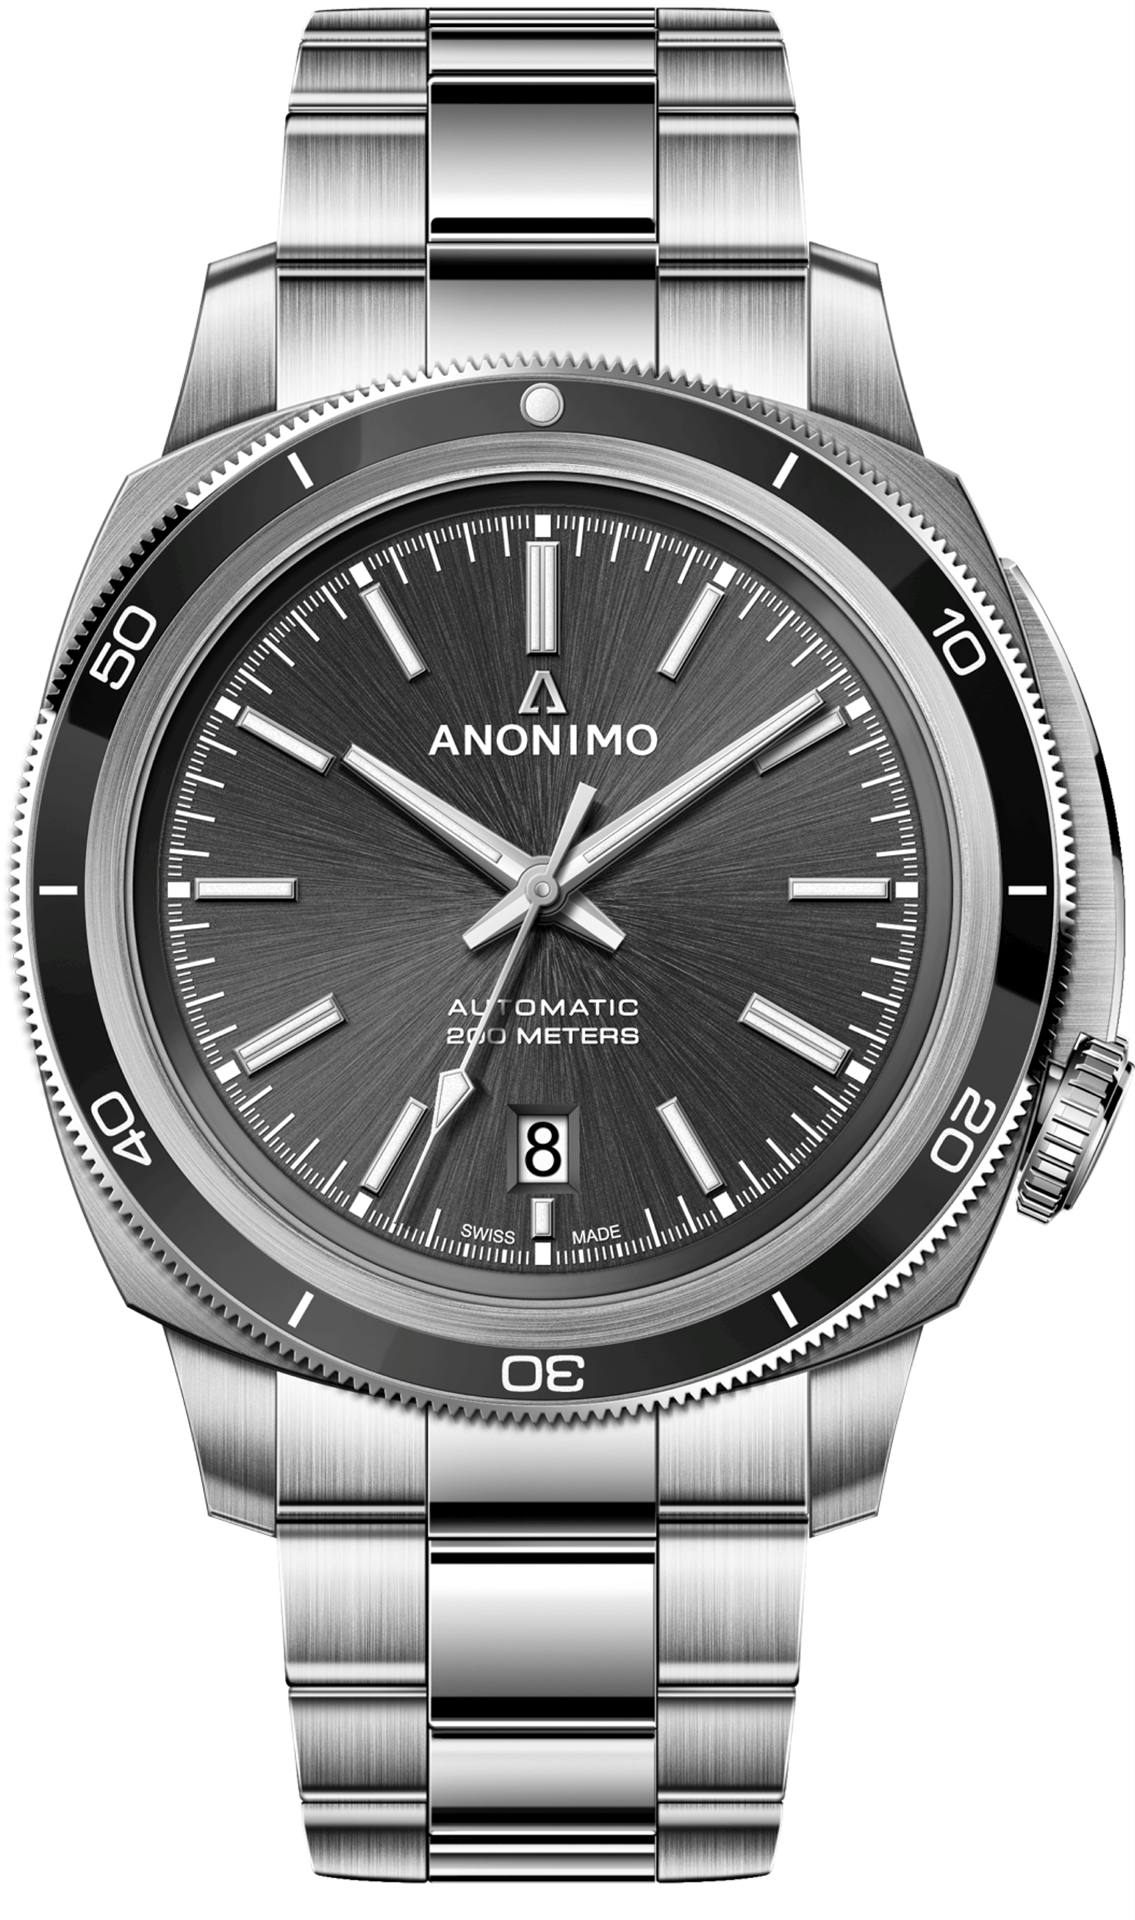 ساعت مچی عقربه ای مردانه اسپرت برند آنونیمو مدل AM-5019.09.101.M01